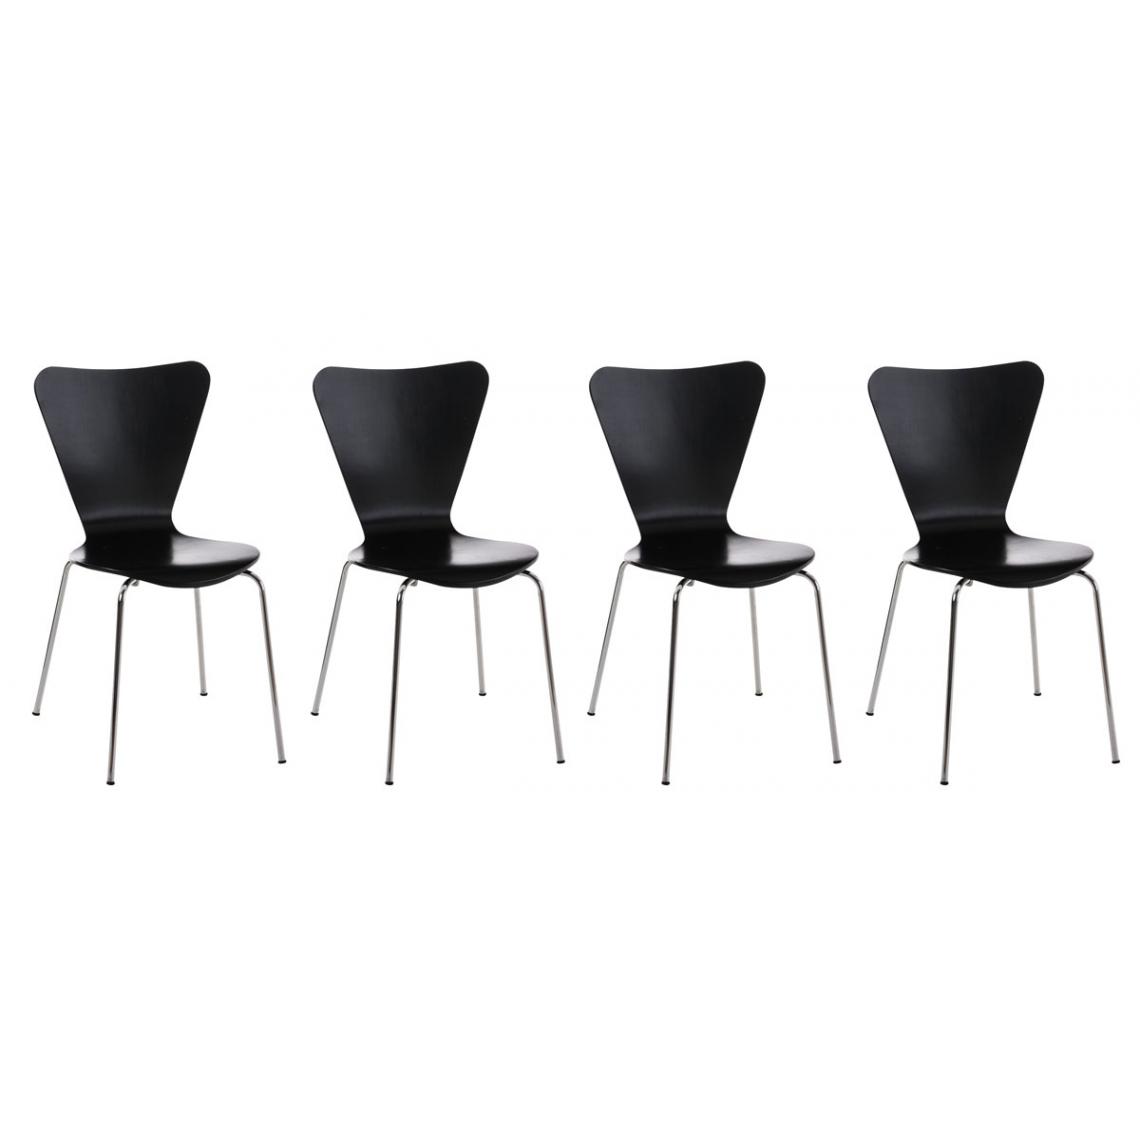 Icaverne - Moderne Lot de 4 chaises visiteurs Nairobi couleur noir - Chaises